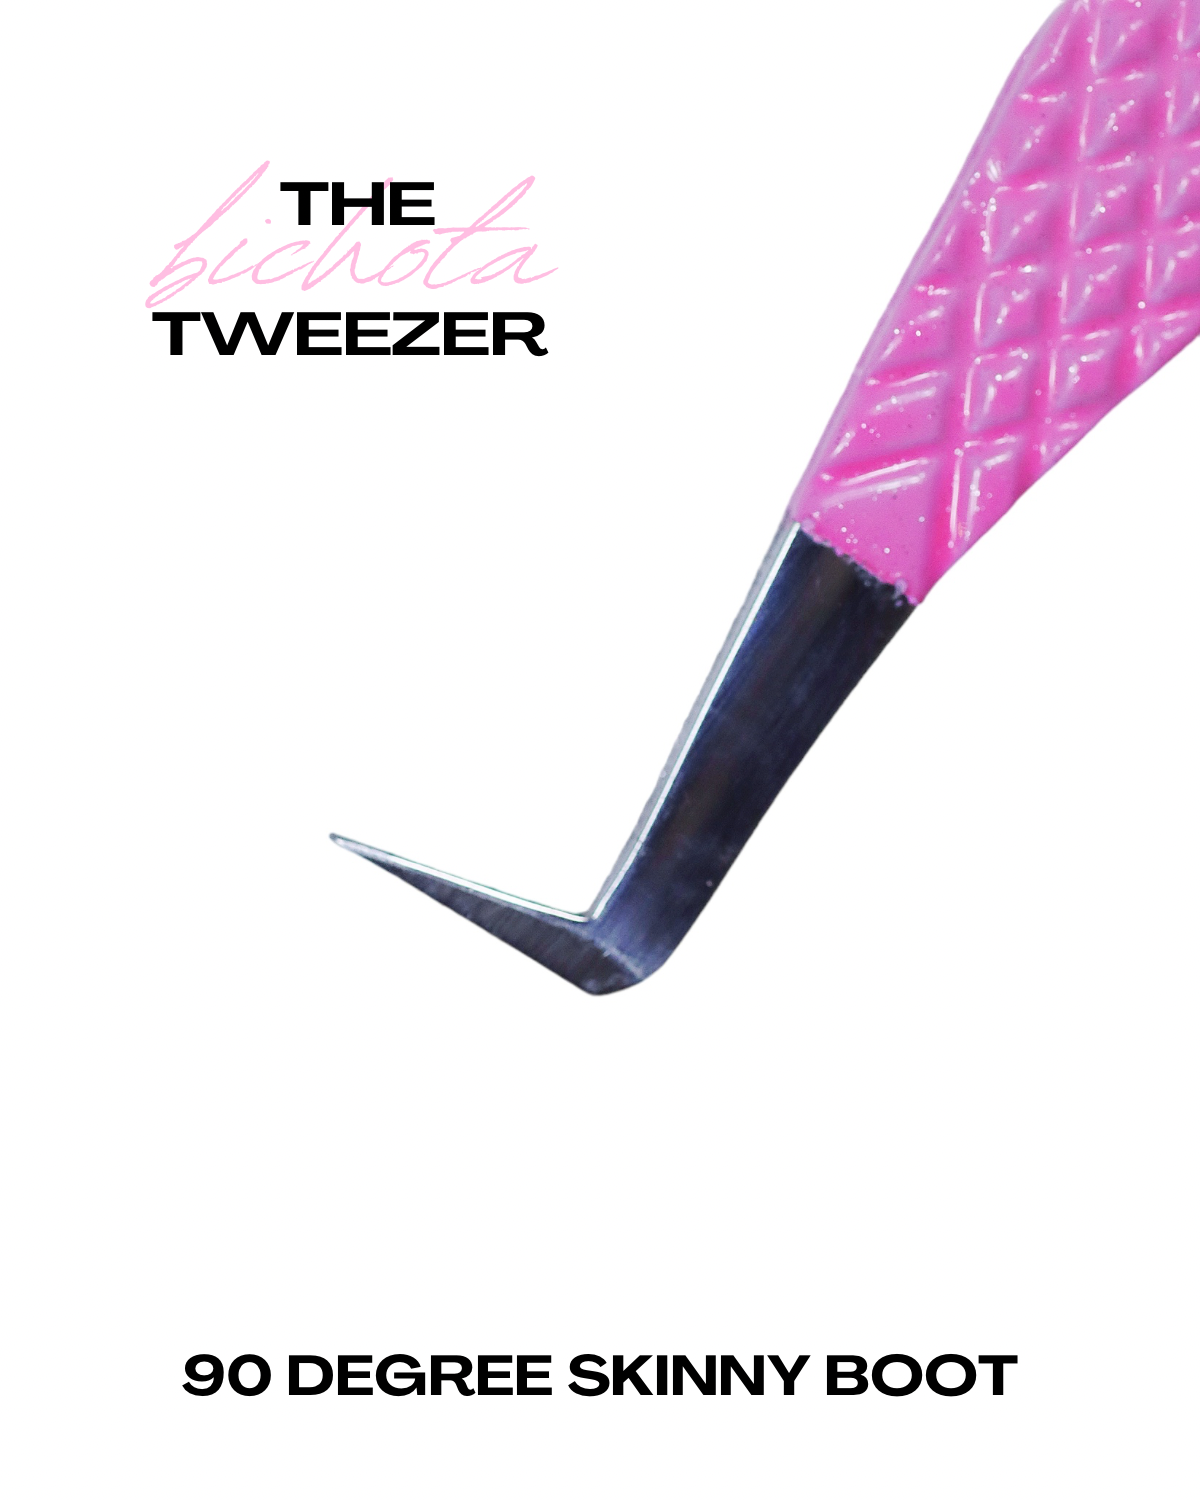 The “Bichota” Tweezer